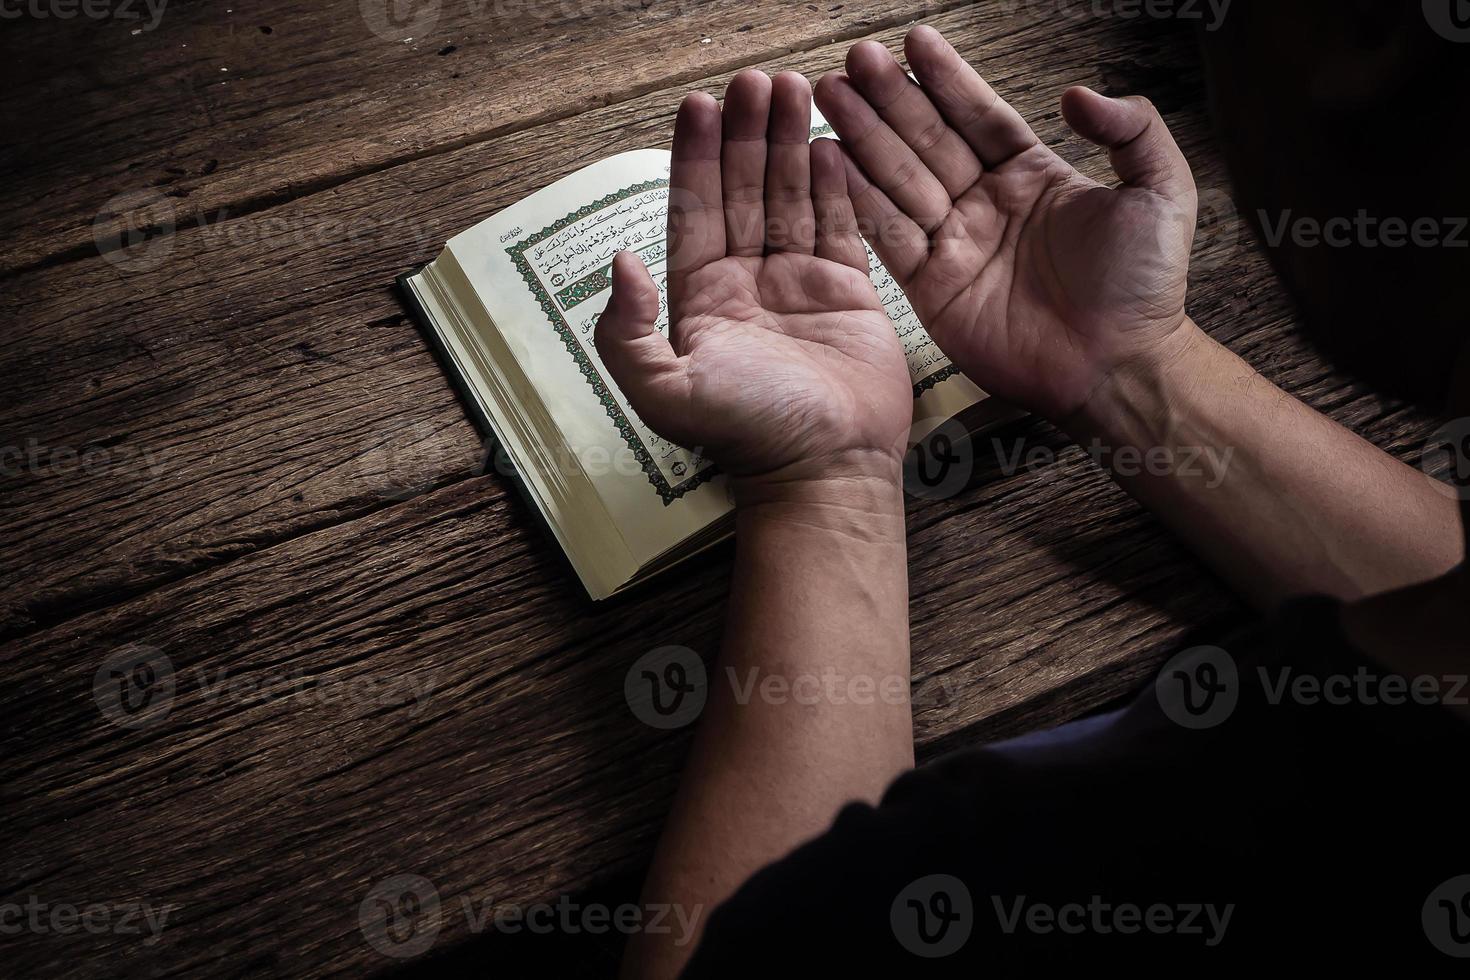 corán libro sagrado de los musulmanes artículo público de todos los musulmanes bodegón foto